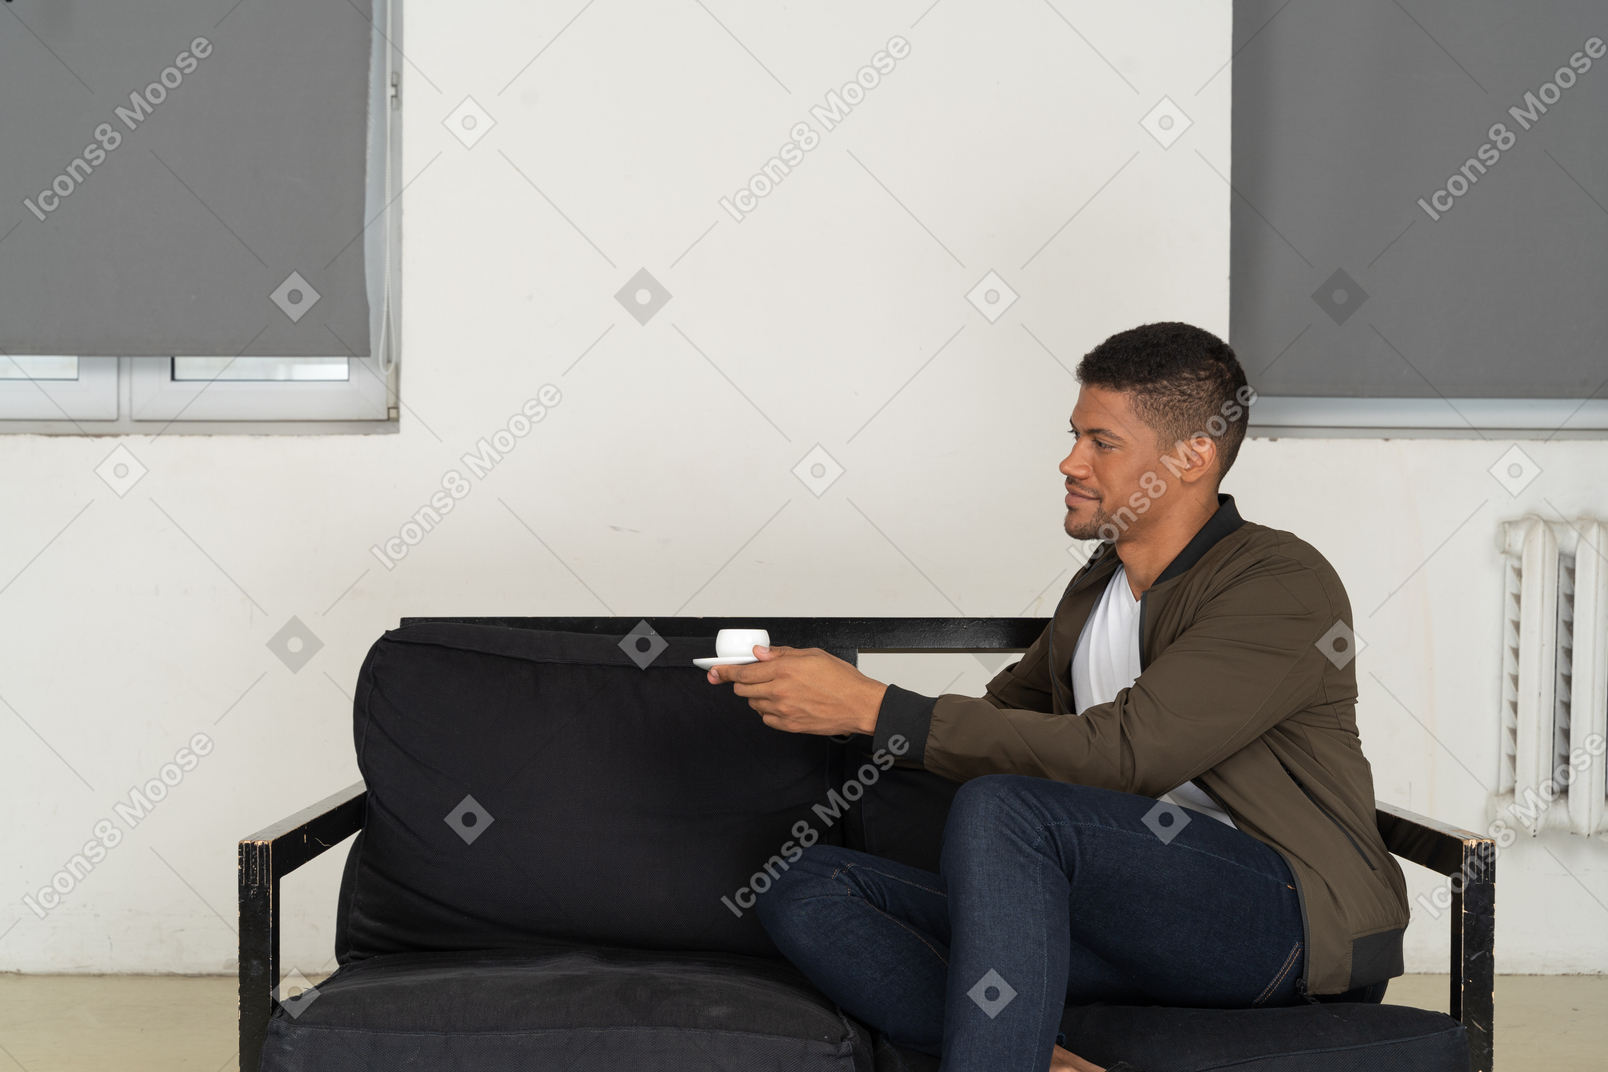 Dreiviertelansicht eines jungen träumenden mannes, der mit einer tasse kaffee auf einem sofa sitzt